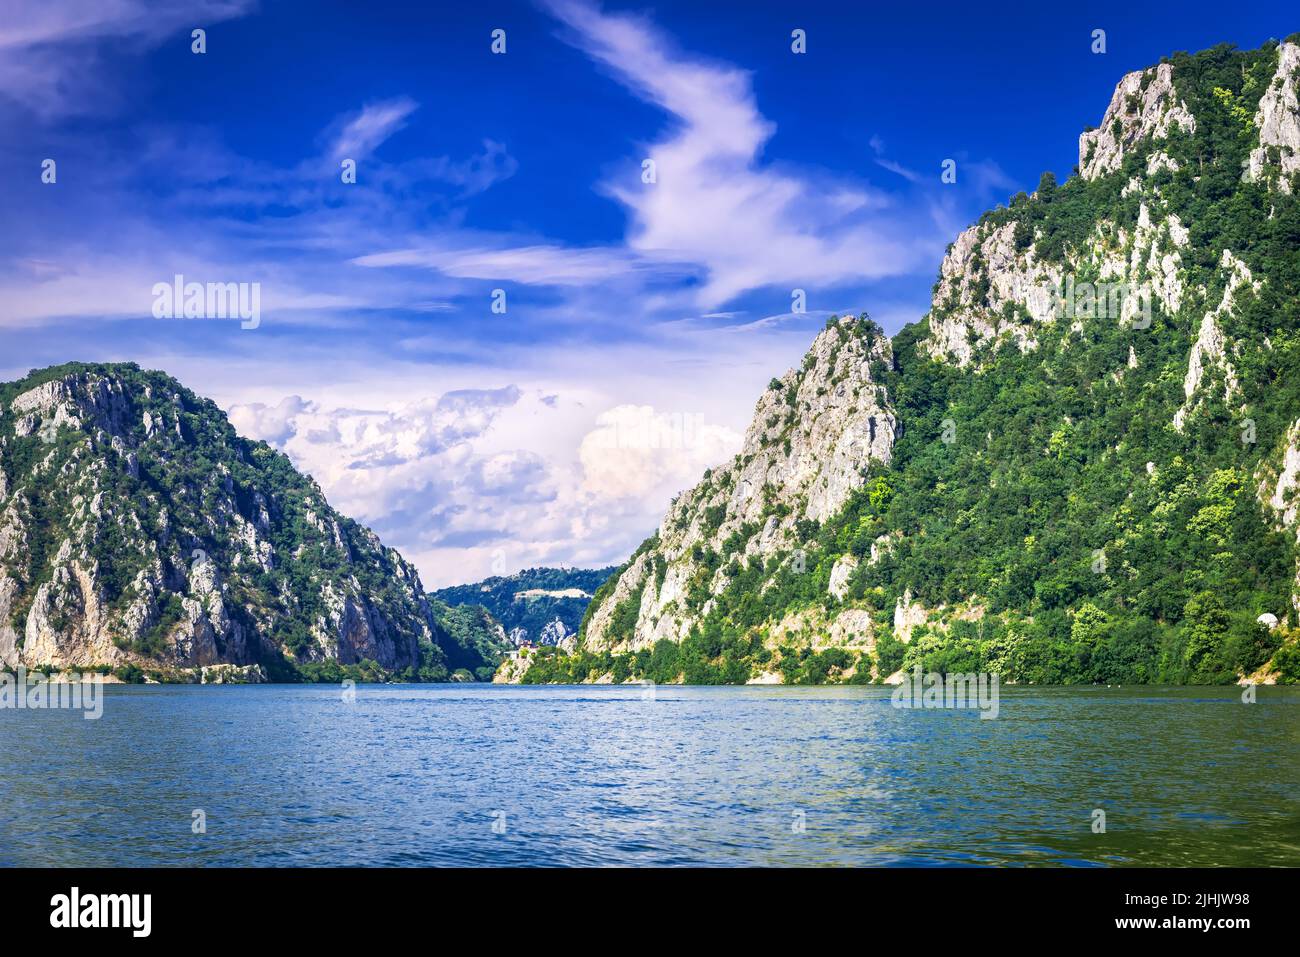 Dubova, Roumanie. Célèbre canyon Iron Gates du Danube. Djerdap gorge, entre la Roumanie et la Serbie. Banque D'Images